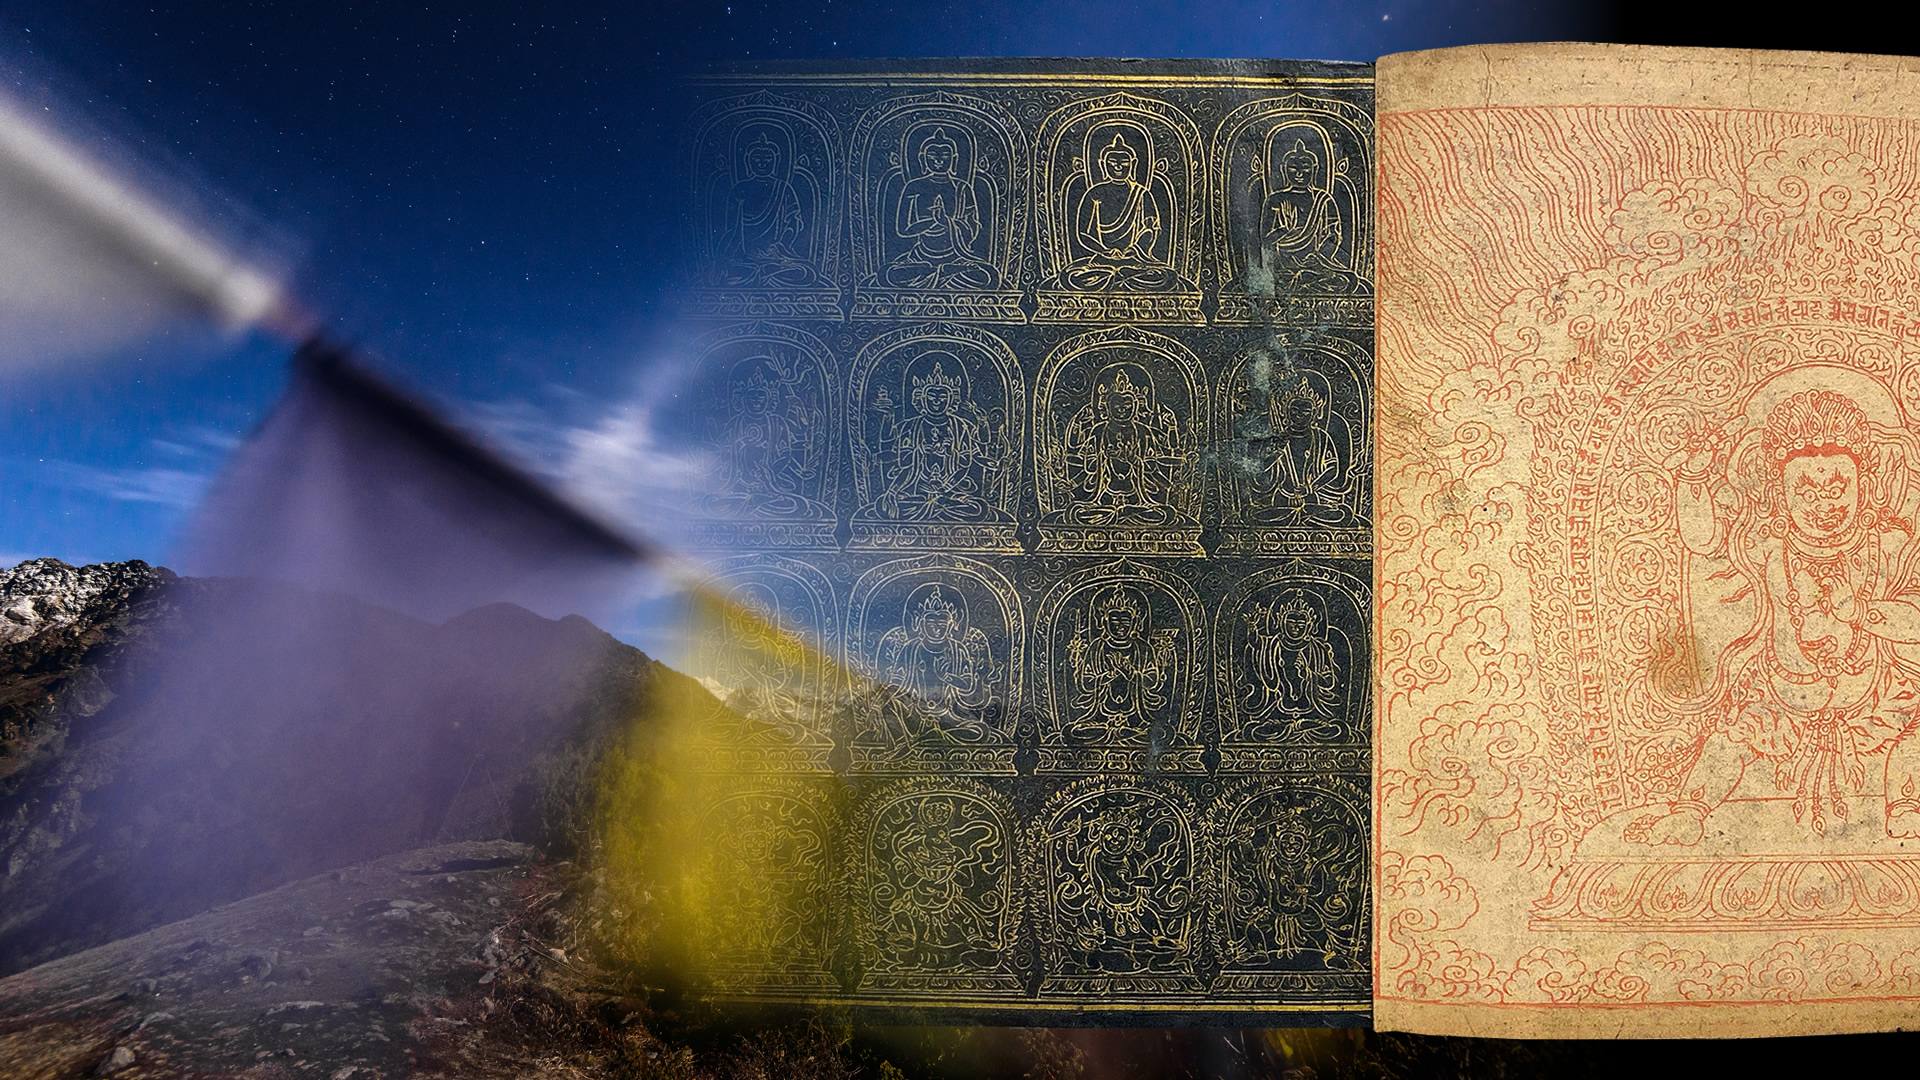 El libro tibetano impreso 40 años antes que la Biblia de Gutenberg